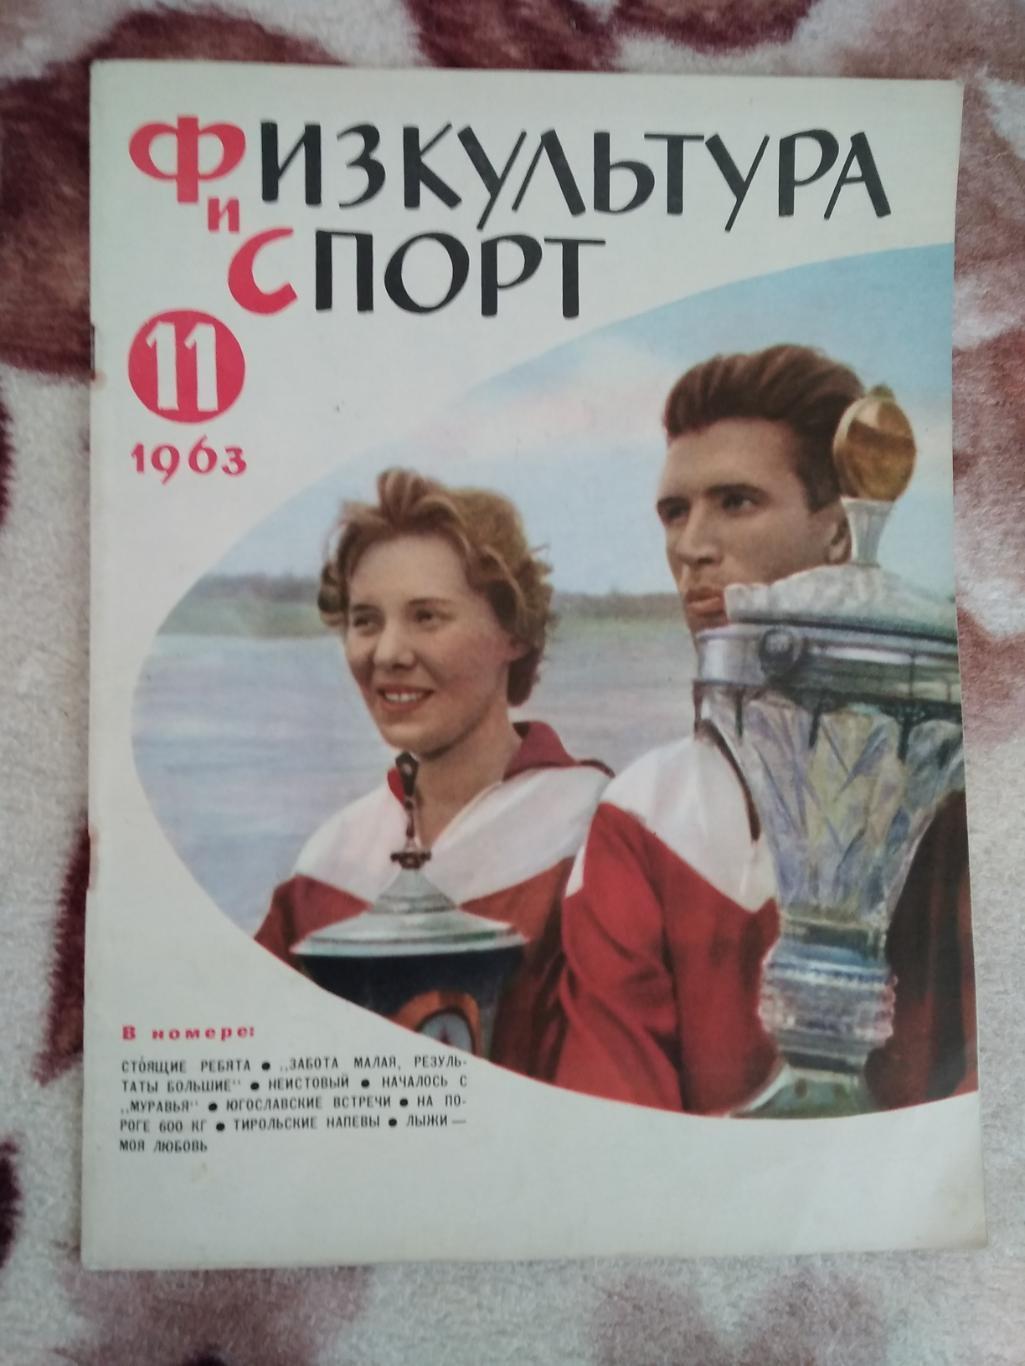 Журнал.Физкультура и спорт № 11 1963 г. (ФиС).